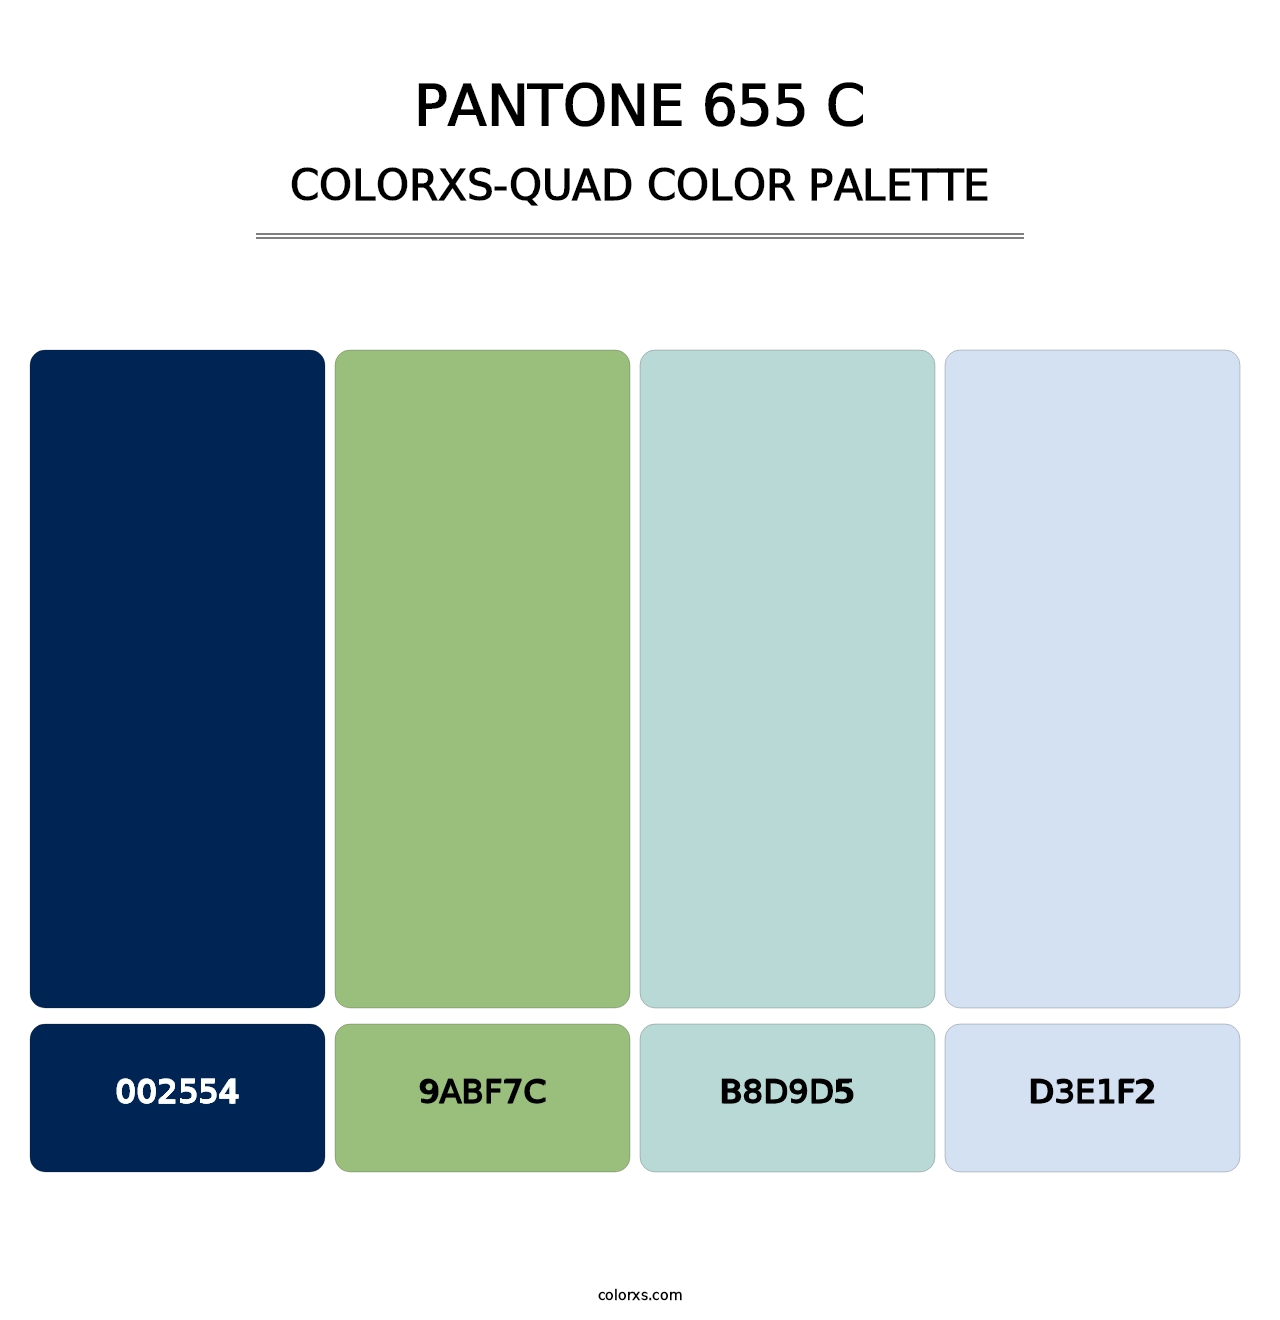 PANTONE 655 C - Colorxs Quad Palette